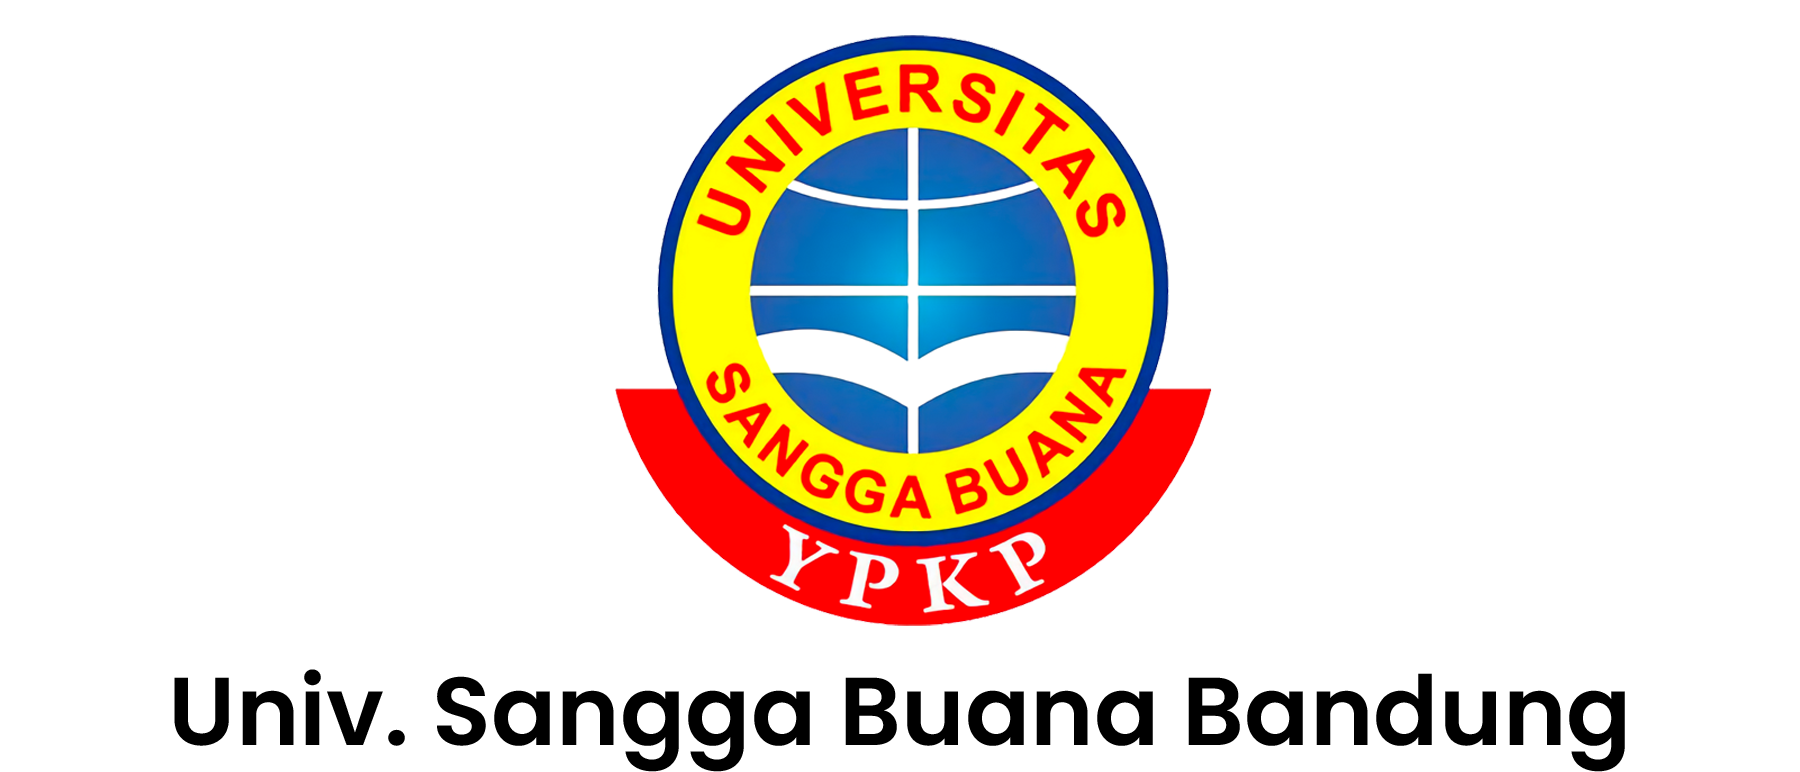 Univ. Sangga Buana Bandung